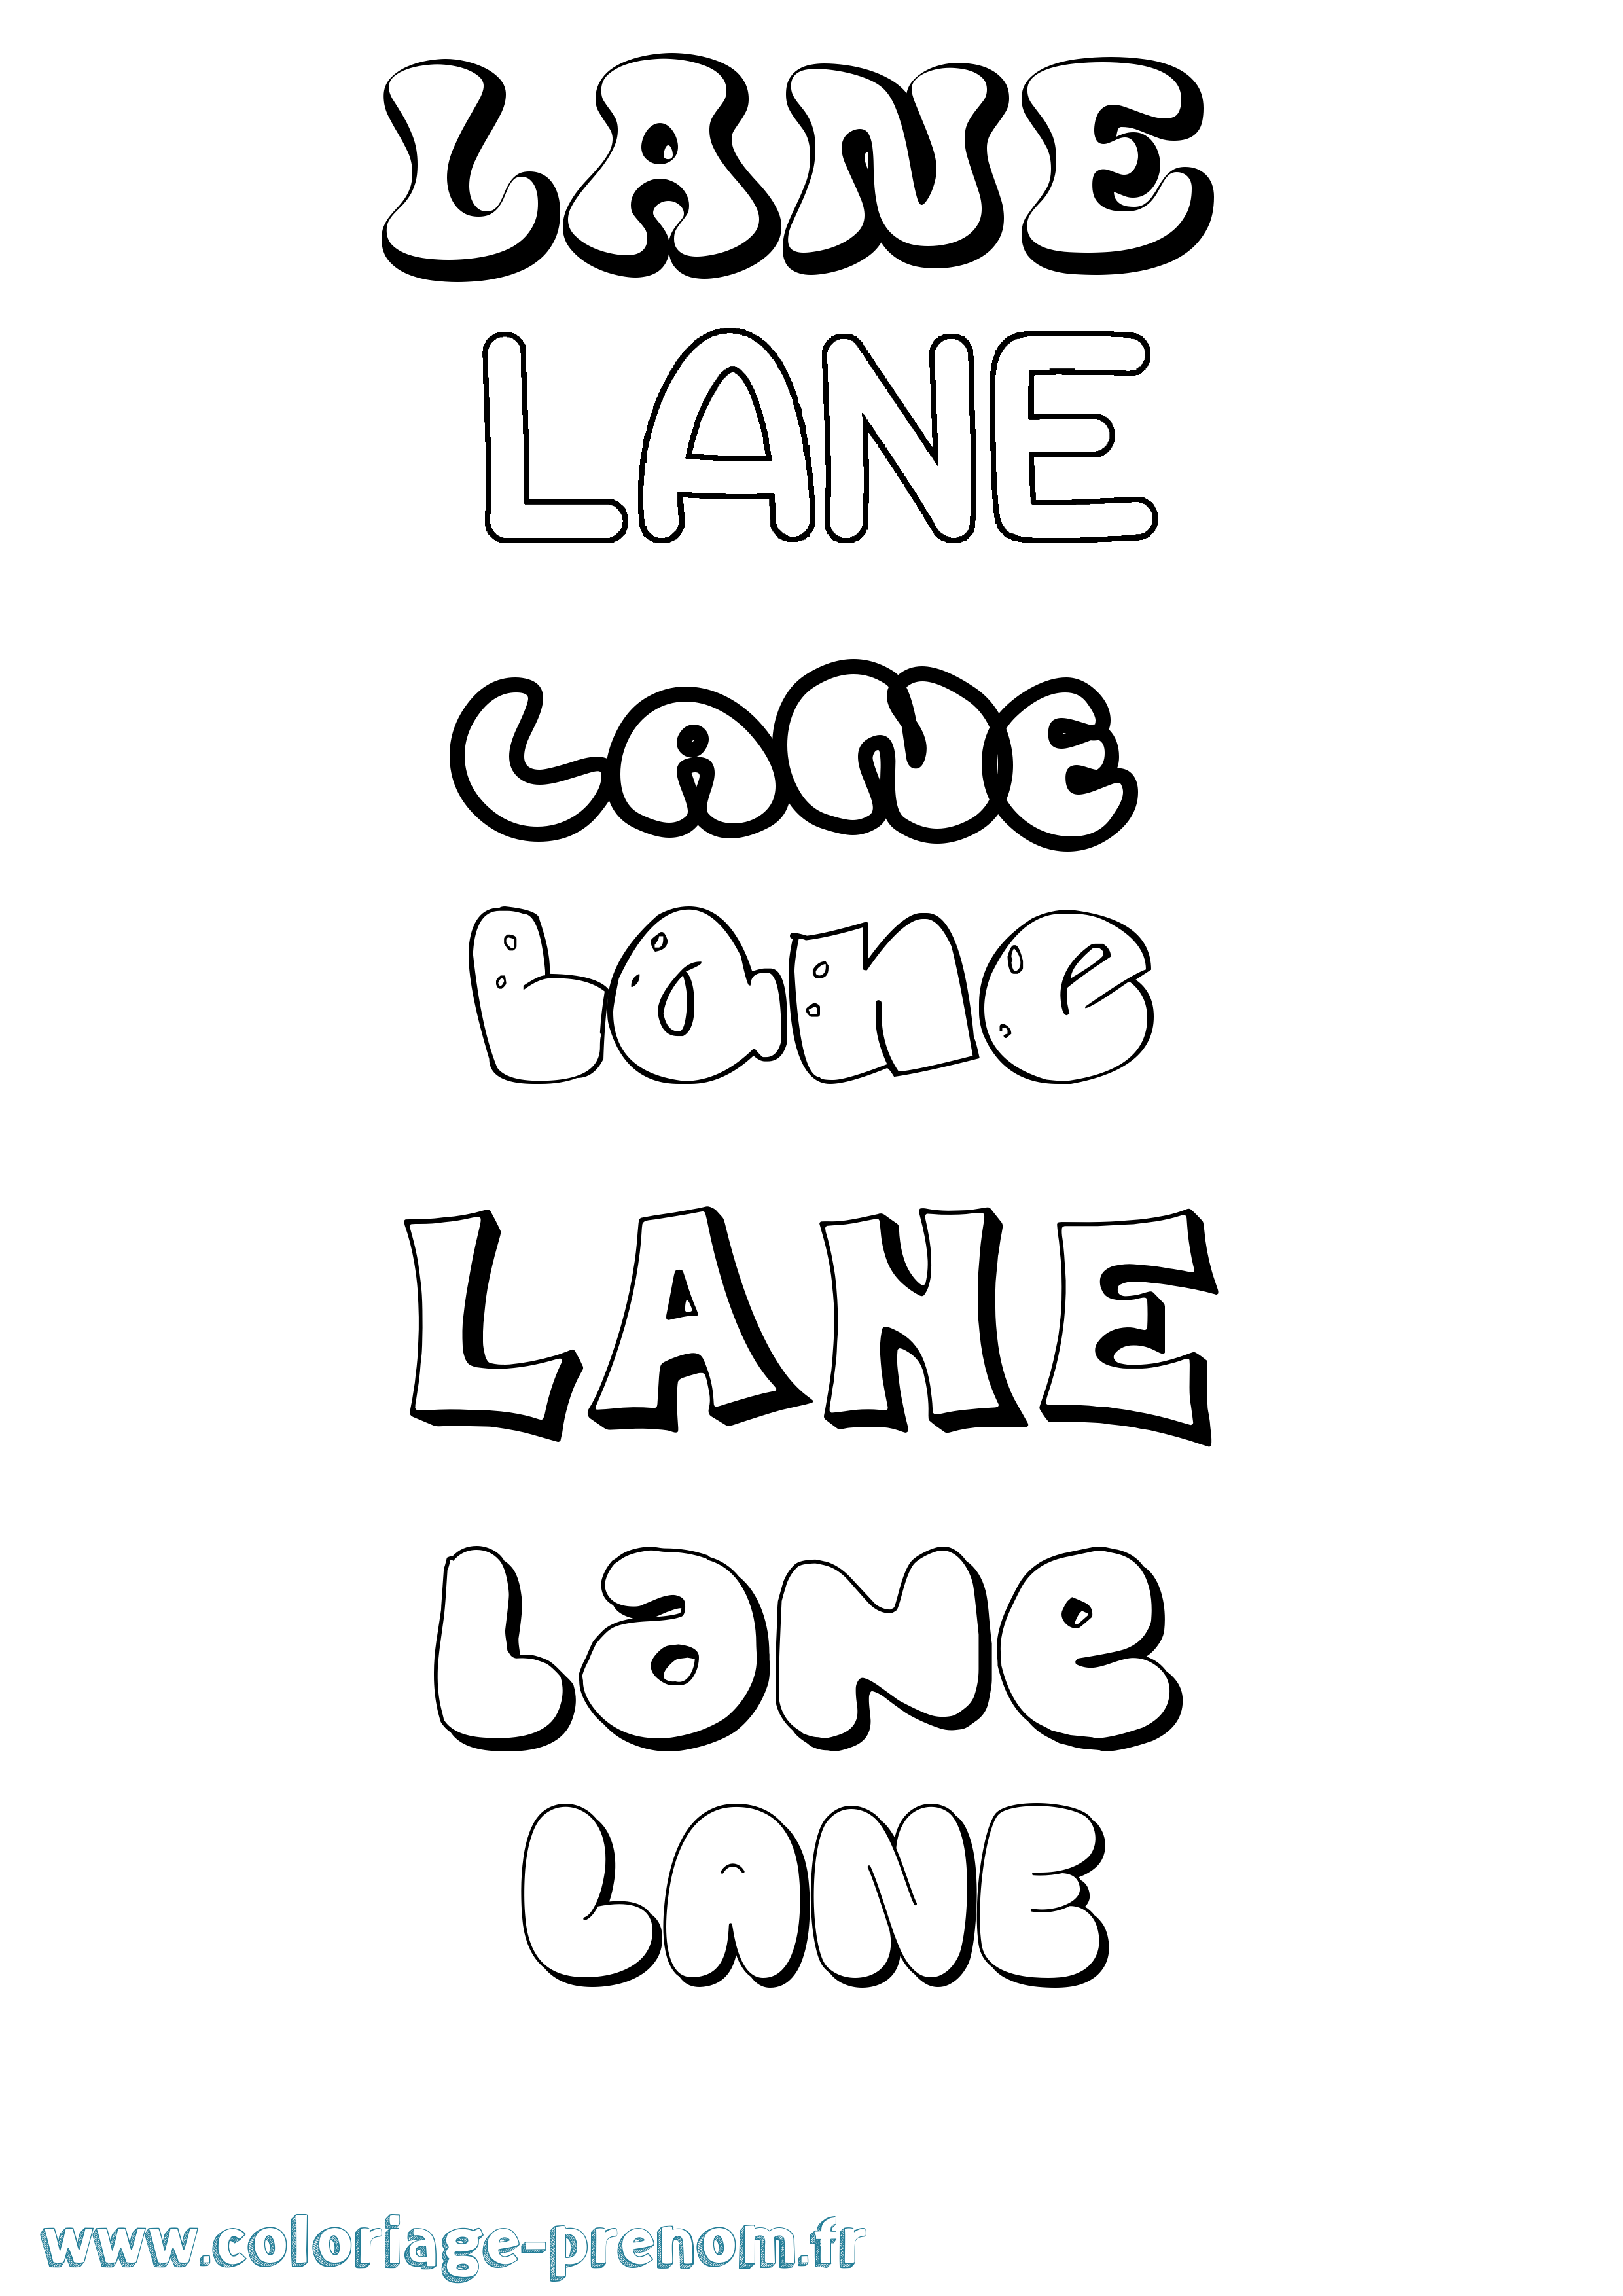 Coloriage prénom Lane Bubble